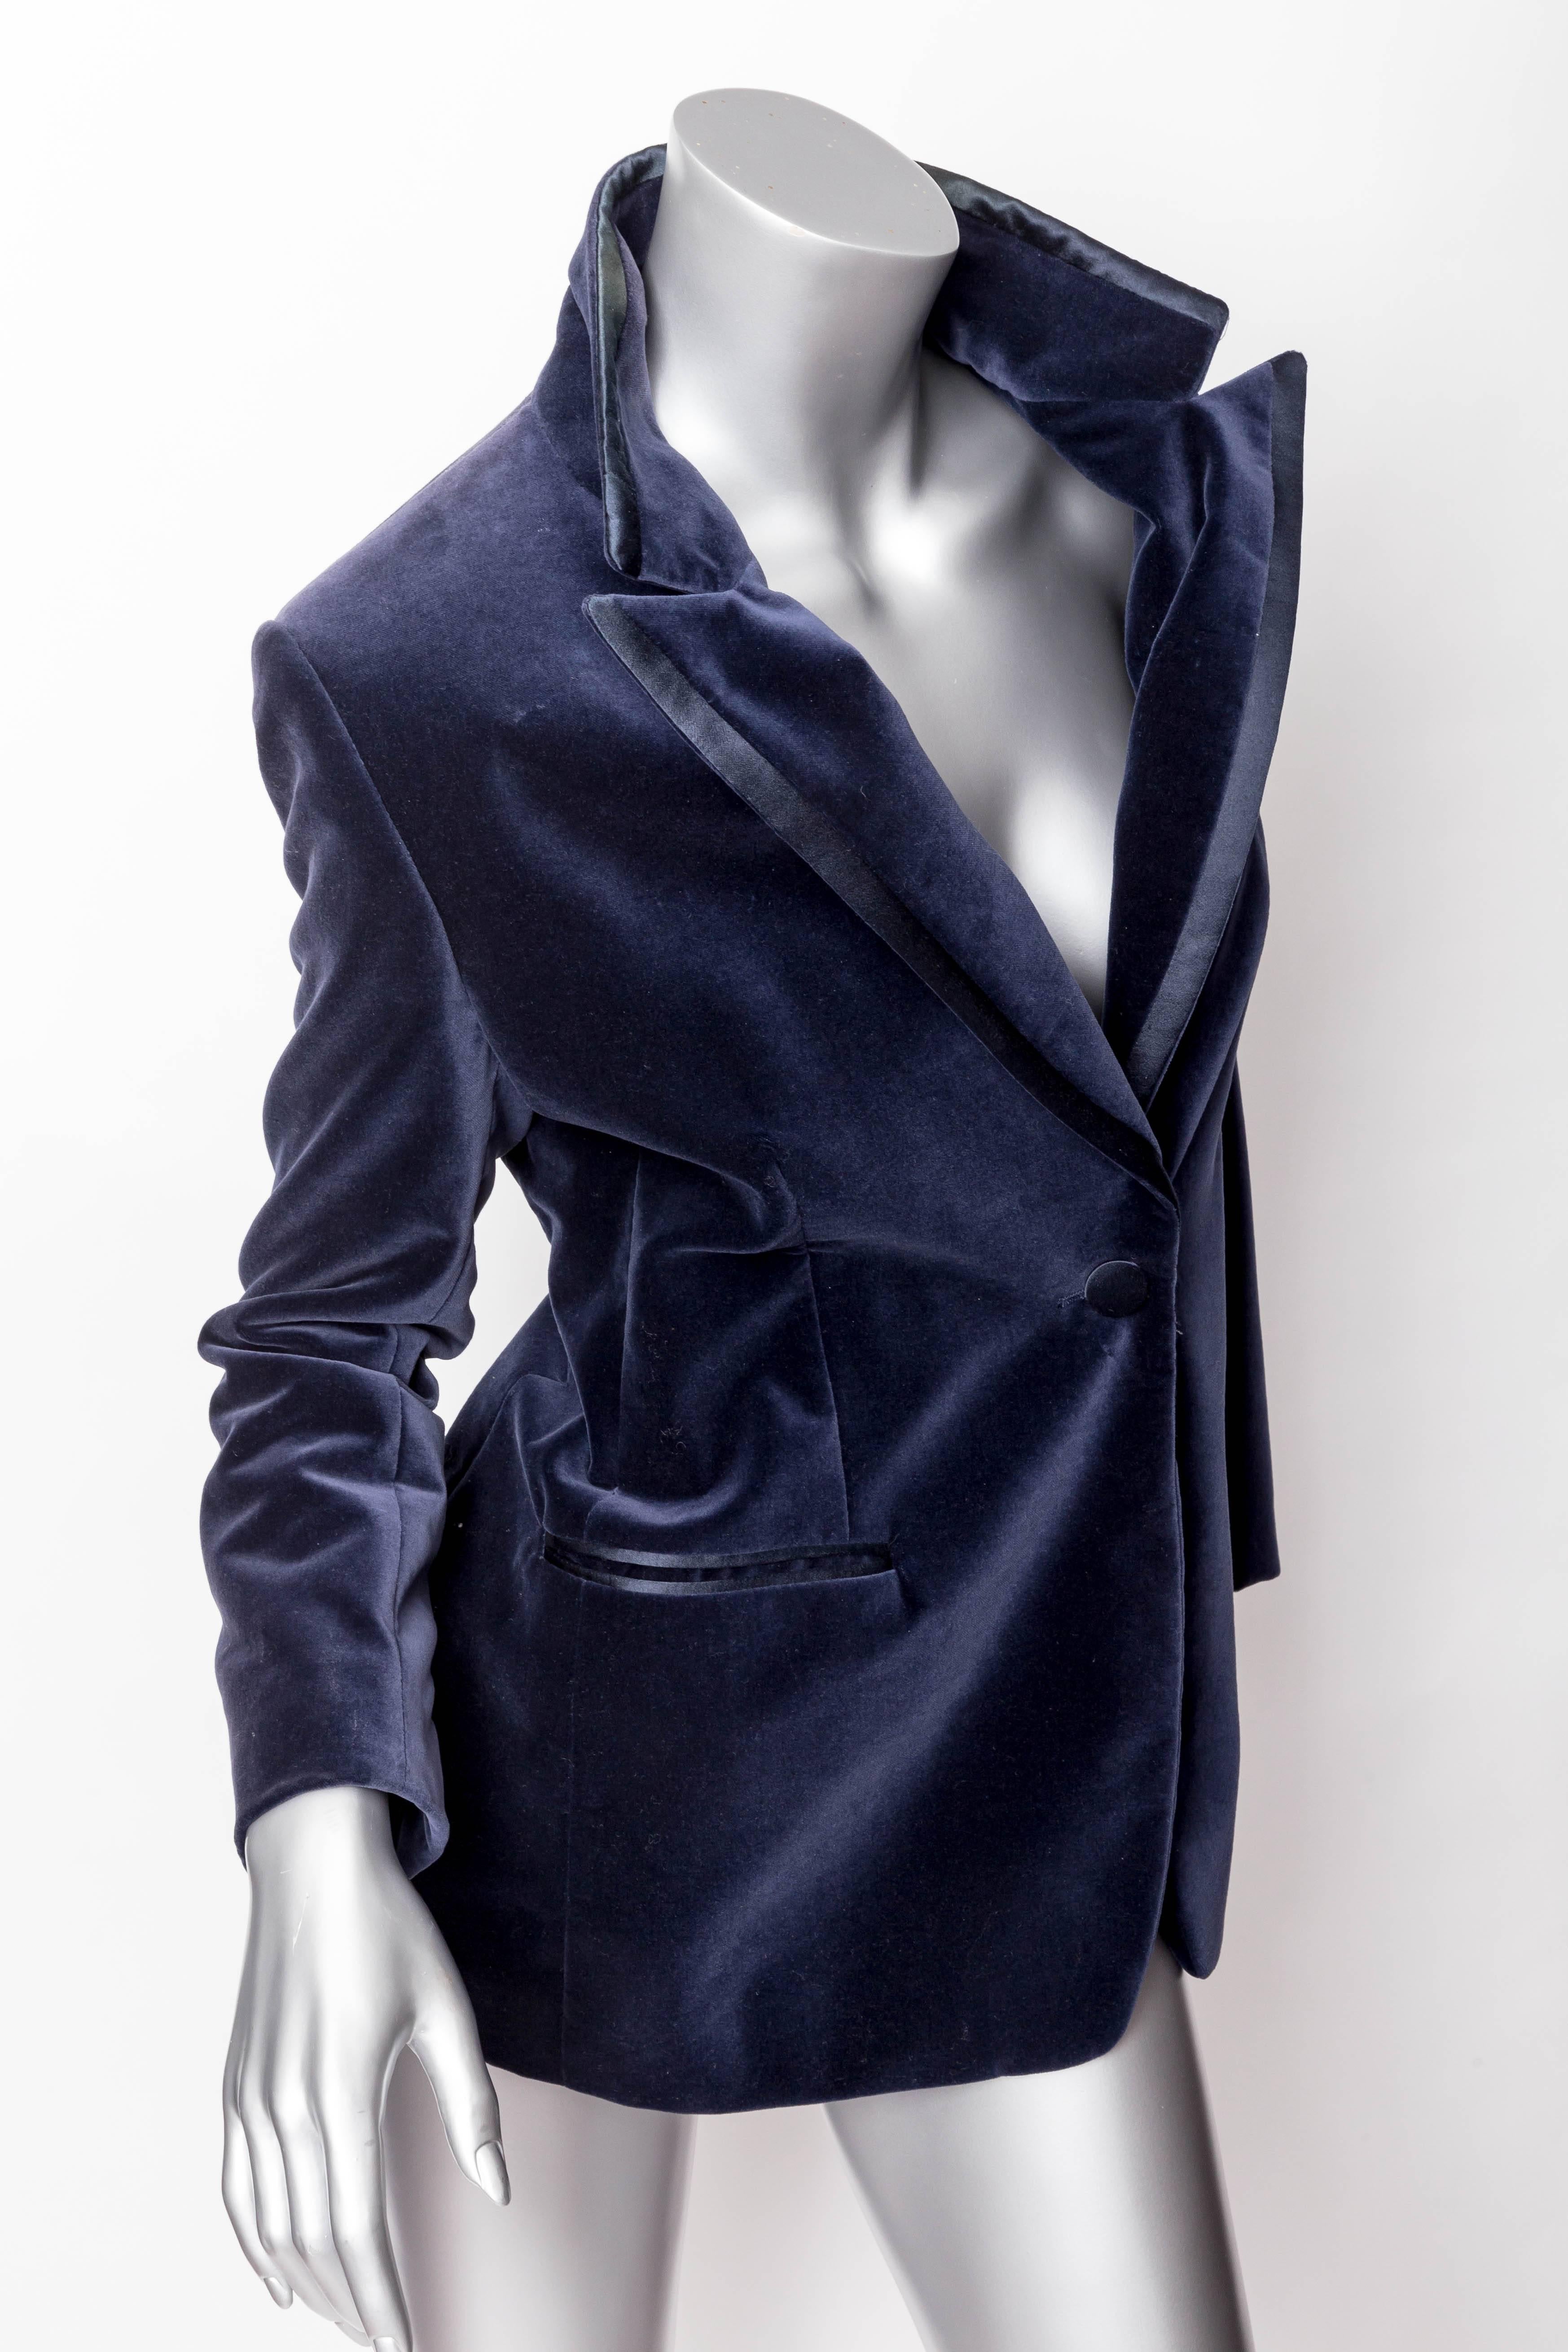 Women's Tom Ford for Gucci Blue Velvet Tuxedo - Size 40